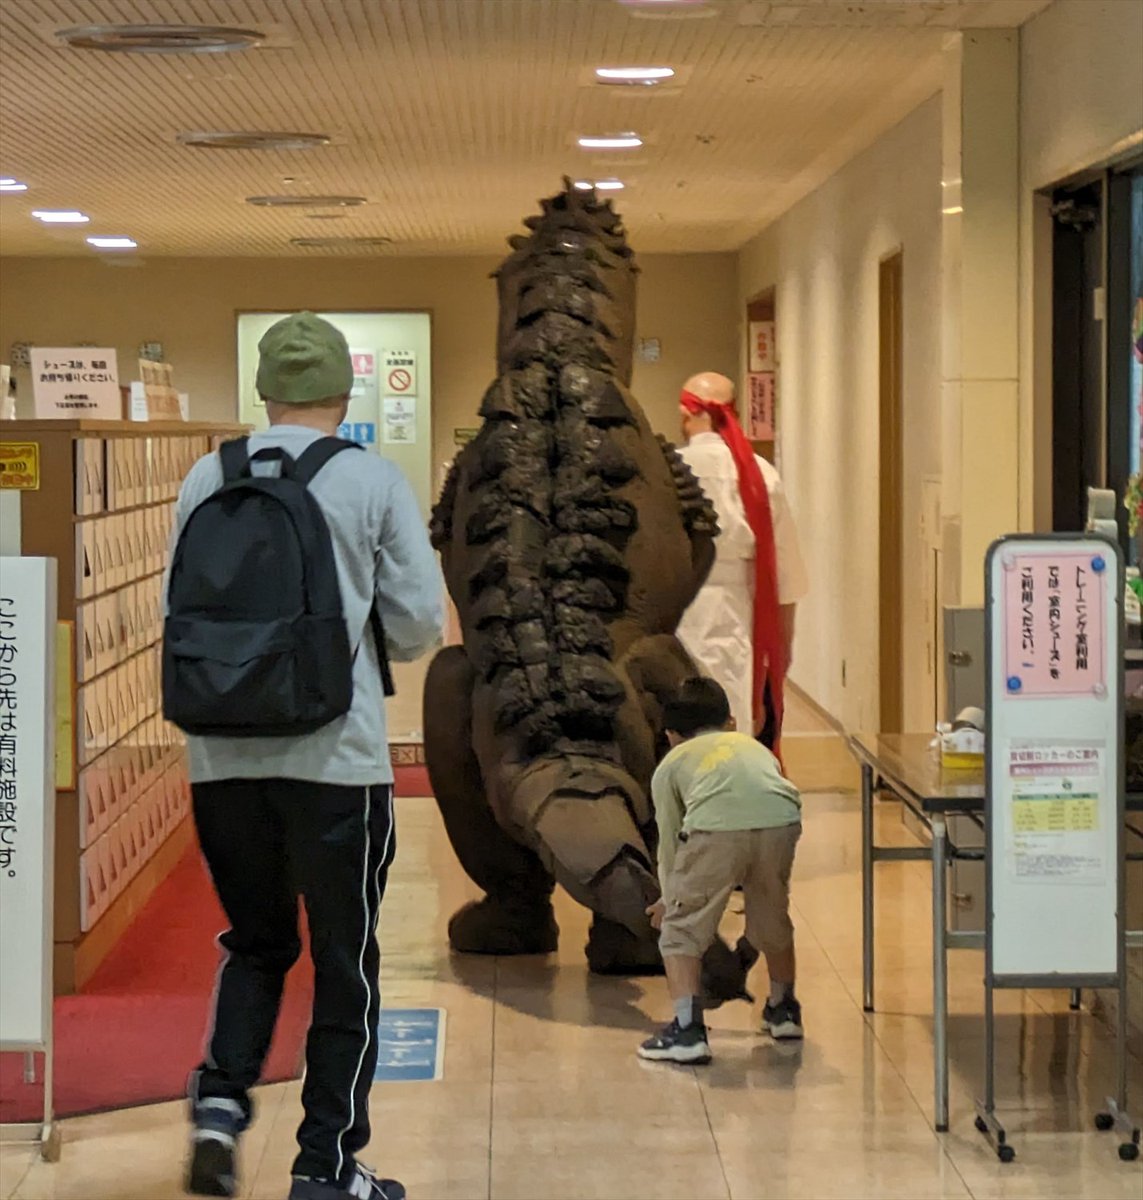 5月5日に行われたJWA東海プロレスに参戦していた剣道家による剣道家自主興行『謎の剣道』露橋大会の写真を。
「超大物」と発表されていたＸは会場入りで環境保全怪獣オードウと判明。
公園で遊んでいた恐竜Ｔシャツの少年もついて来た(笑)
小中学生無料だったら入ってもらえたのに。
#JWA東海剣道